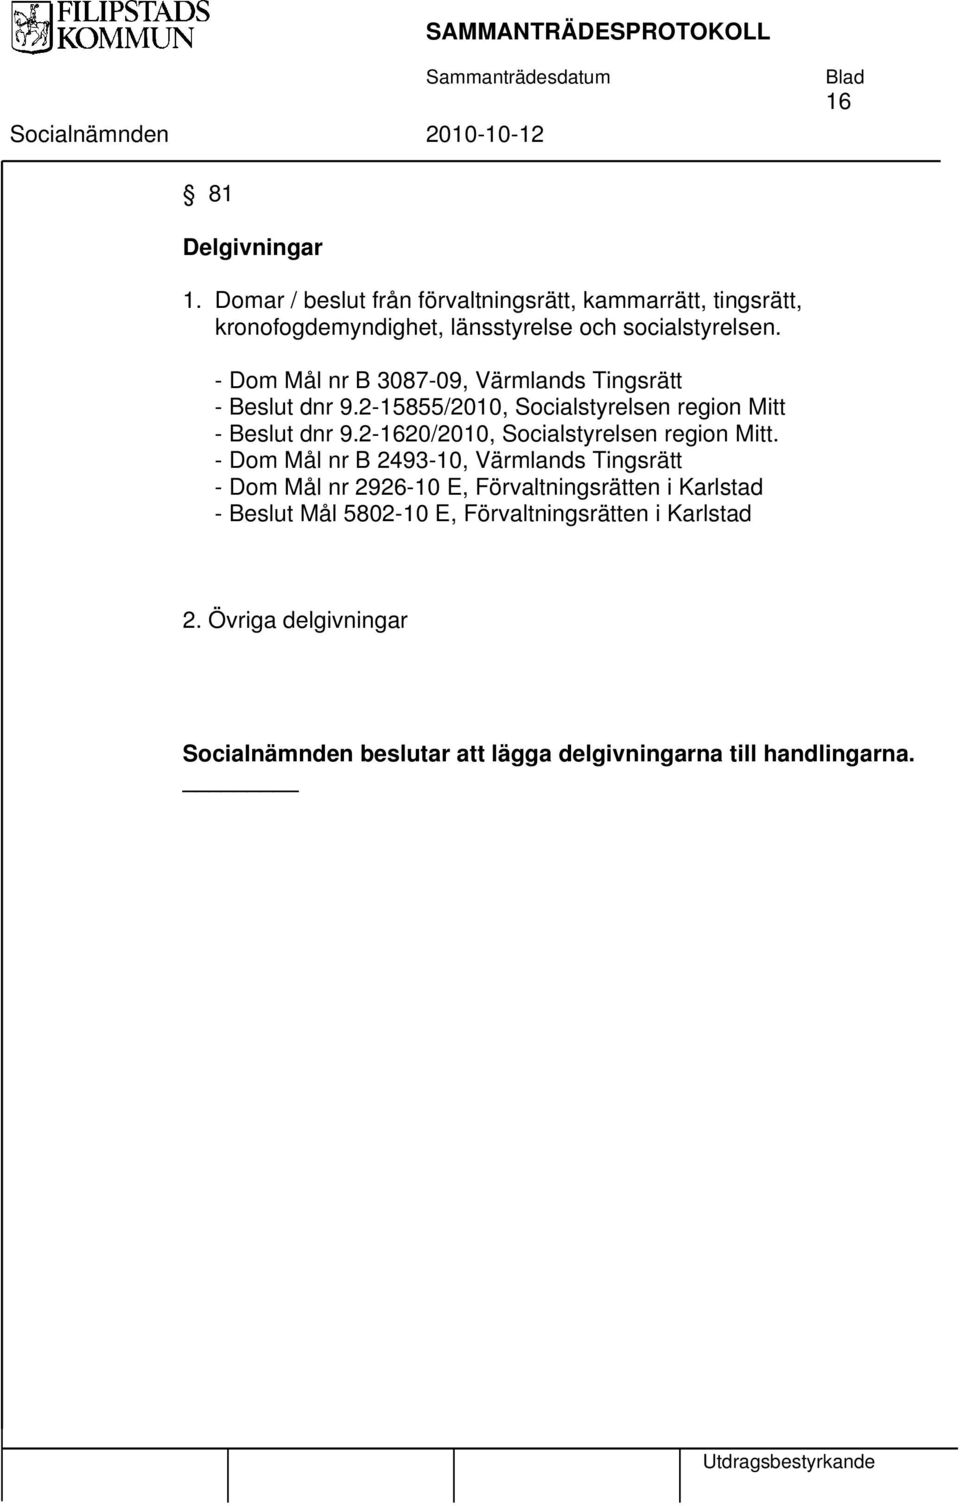 - Dom Mål nr B 3087-09, Värmlands Tingsrätt - Beslut dnr 9.2-15855/2010, Socialstyrelsen region Mitt - Beslut dnr 9.